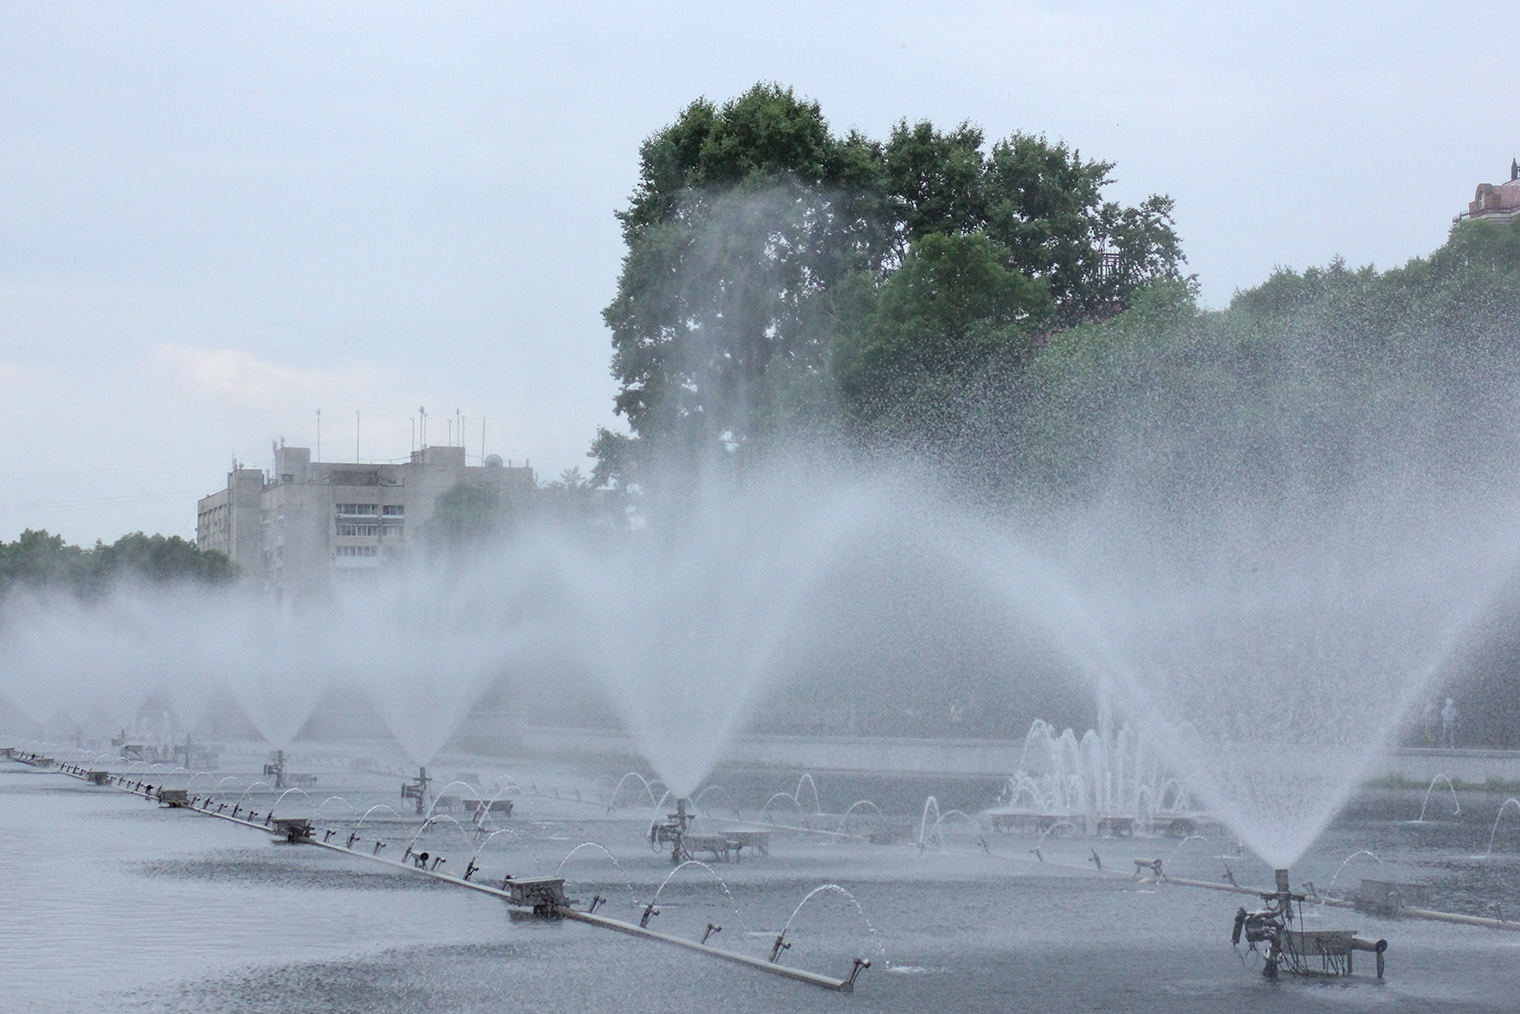 Музыкальный фонтан нижнего пруда на Уссурийском бульваре работает по средам, пятницам, выходным и праздникам с 19:00 до 22:00